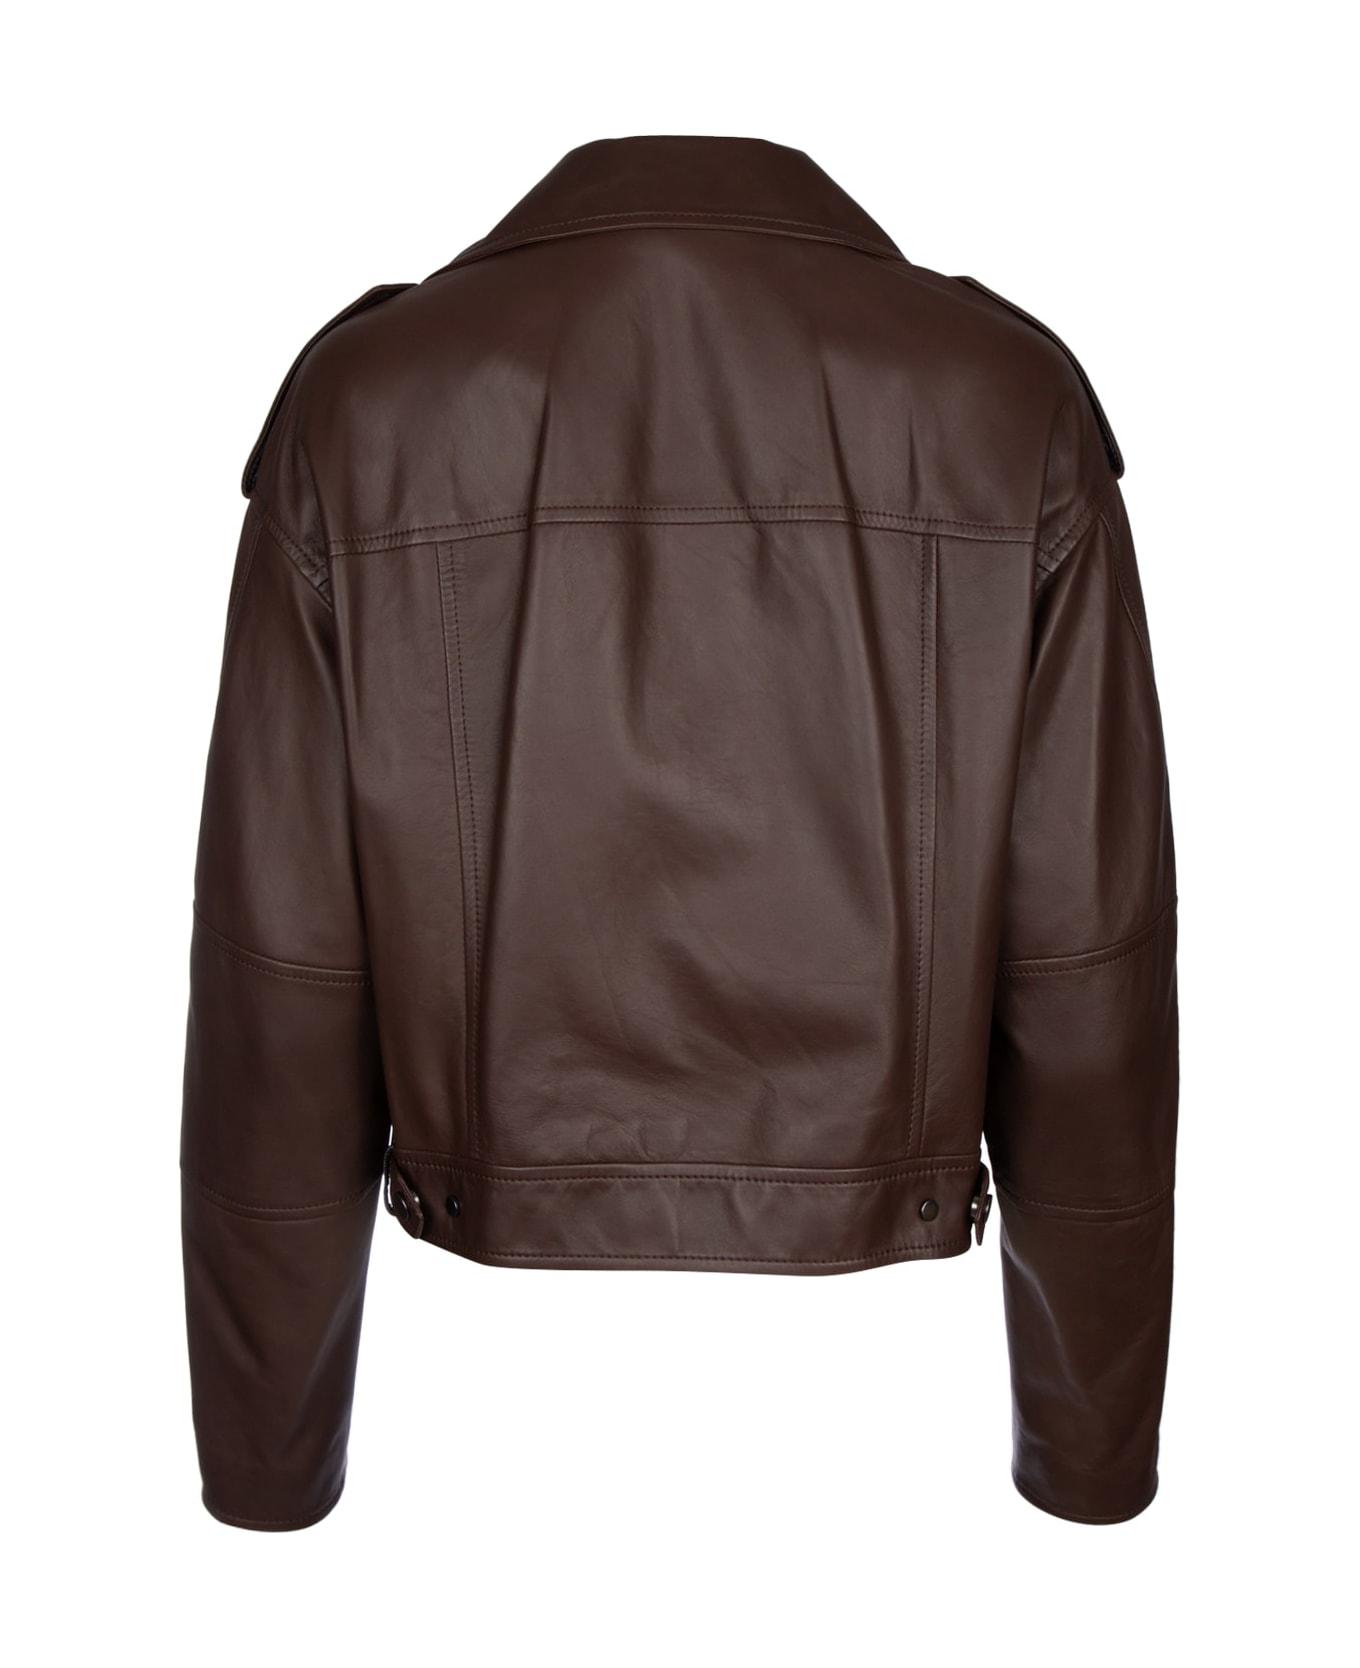 Brunello Cucinelli Leather Jacket - TESTADIMORO